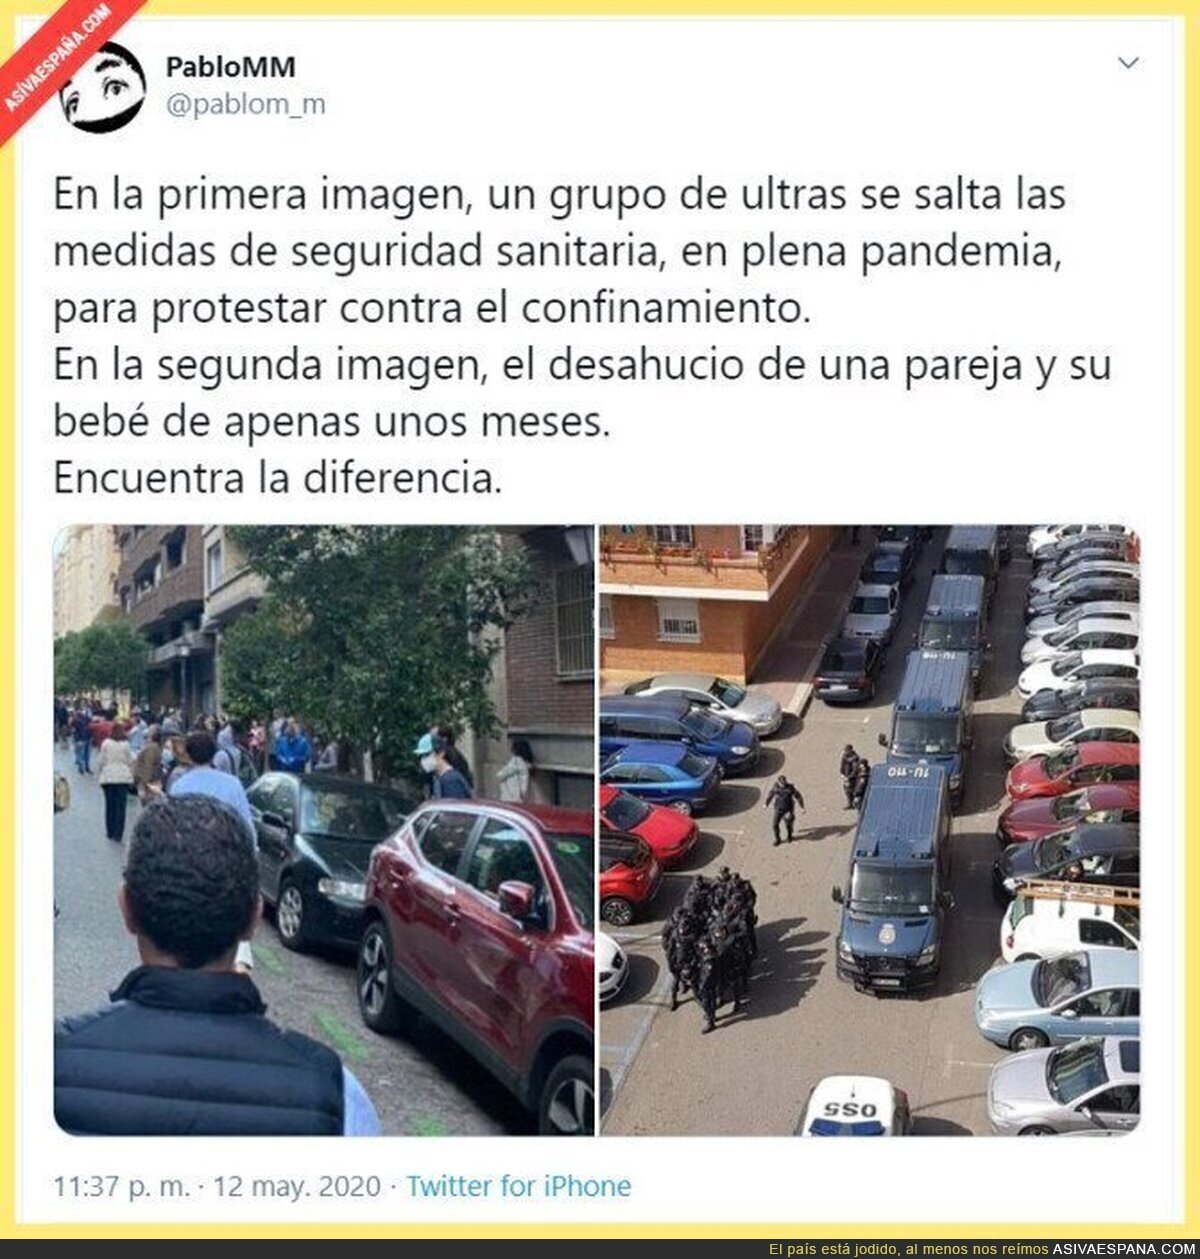 La policía fascista de España se vuelve a dejar ver